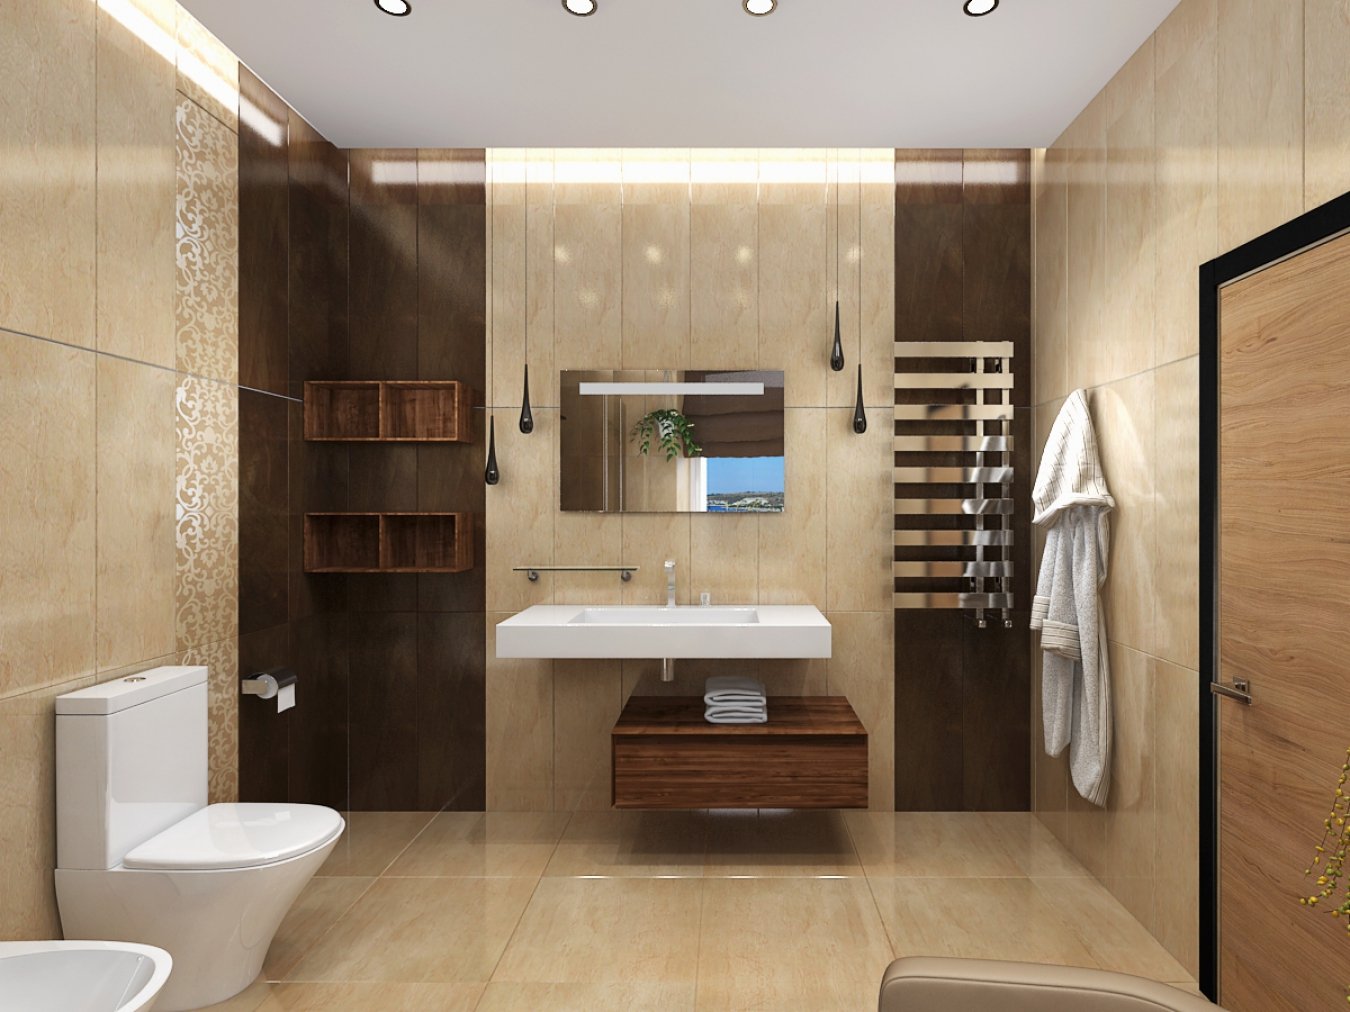 Ванна дизайн коричневая. Интерьер санузла. Стильная ванная комната. Современный интерьер ванной. Ванная в коричнево-бежевых тонах.